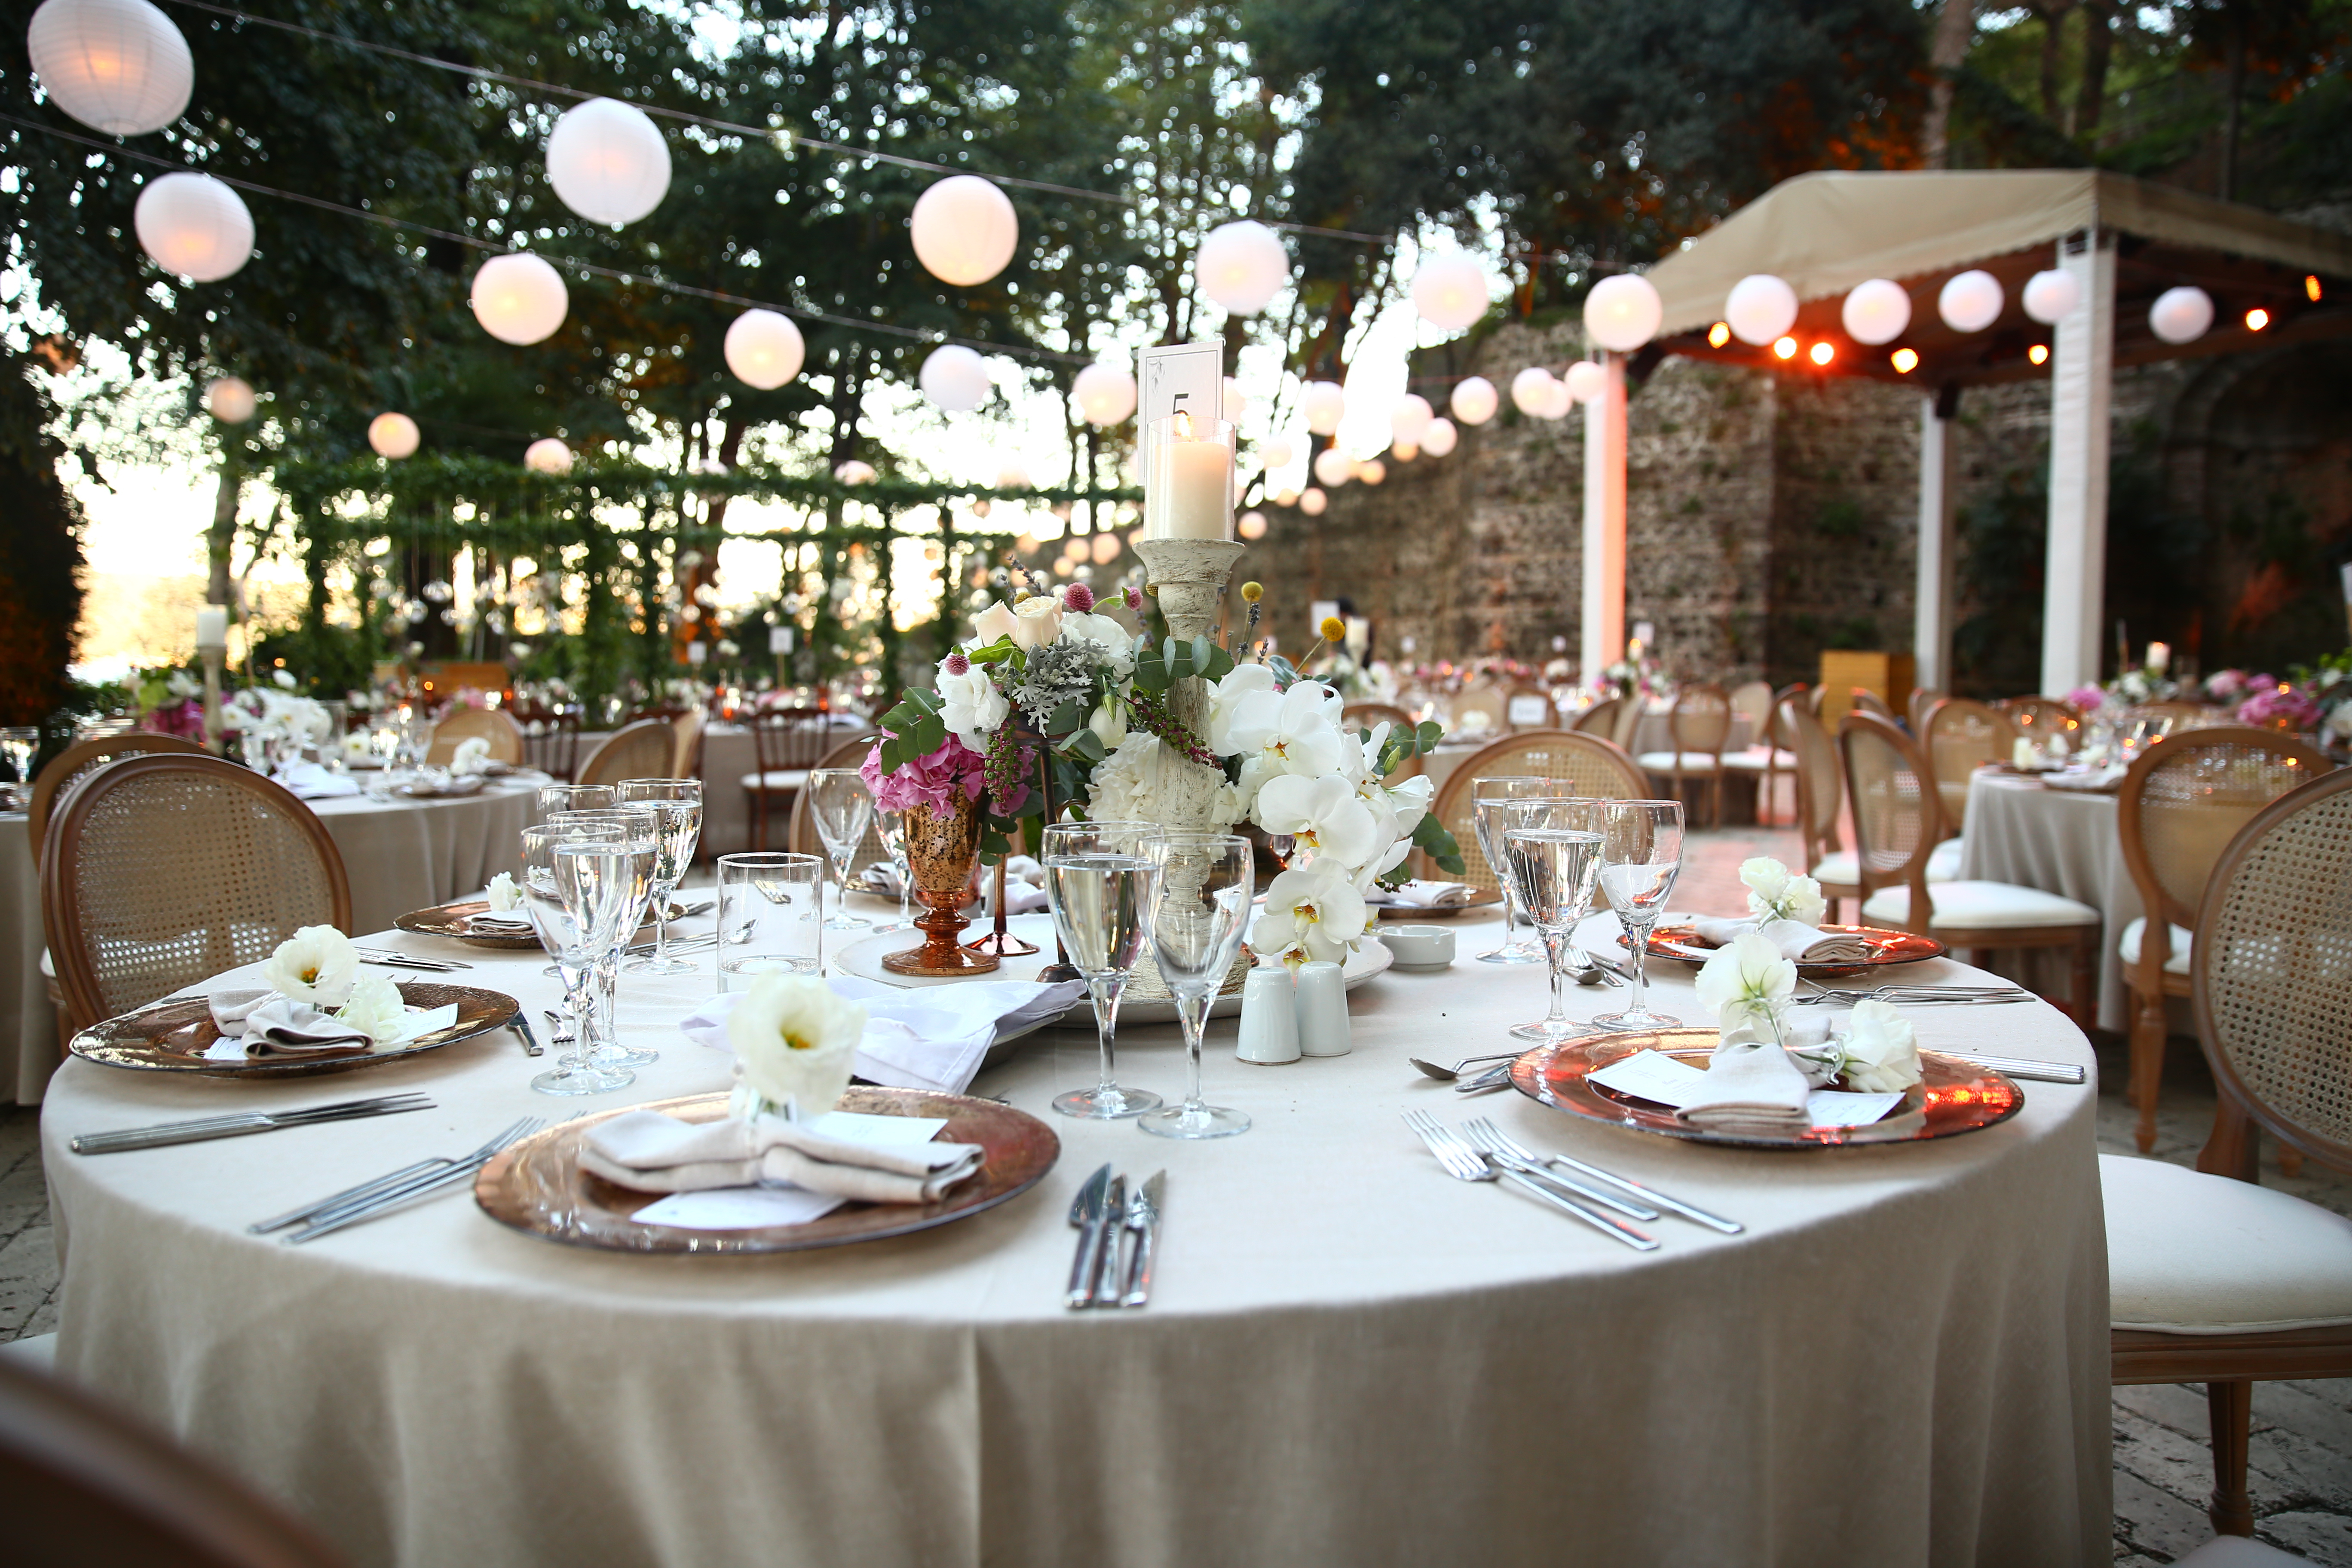 A wedding reception | Source: Shutterstock